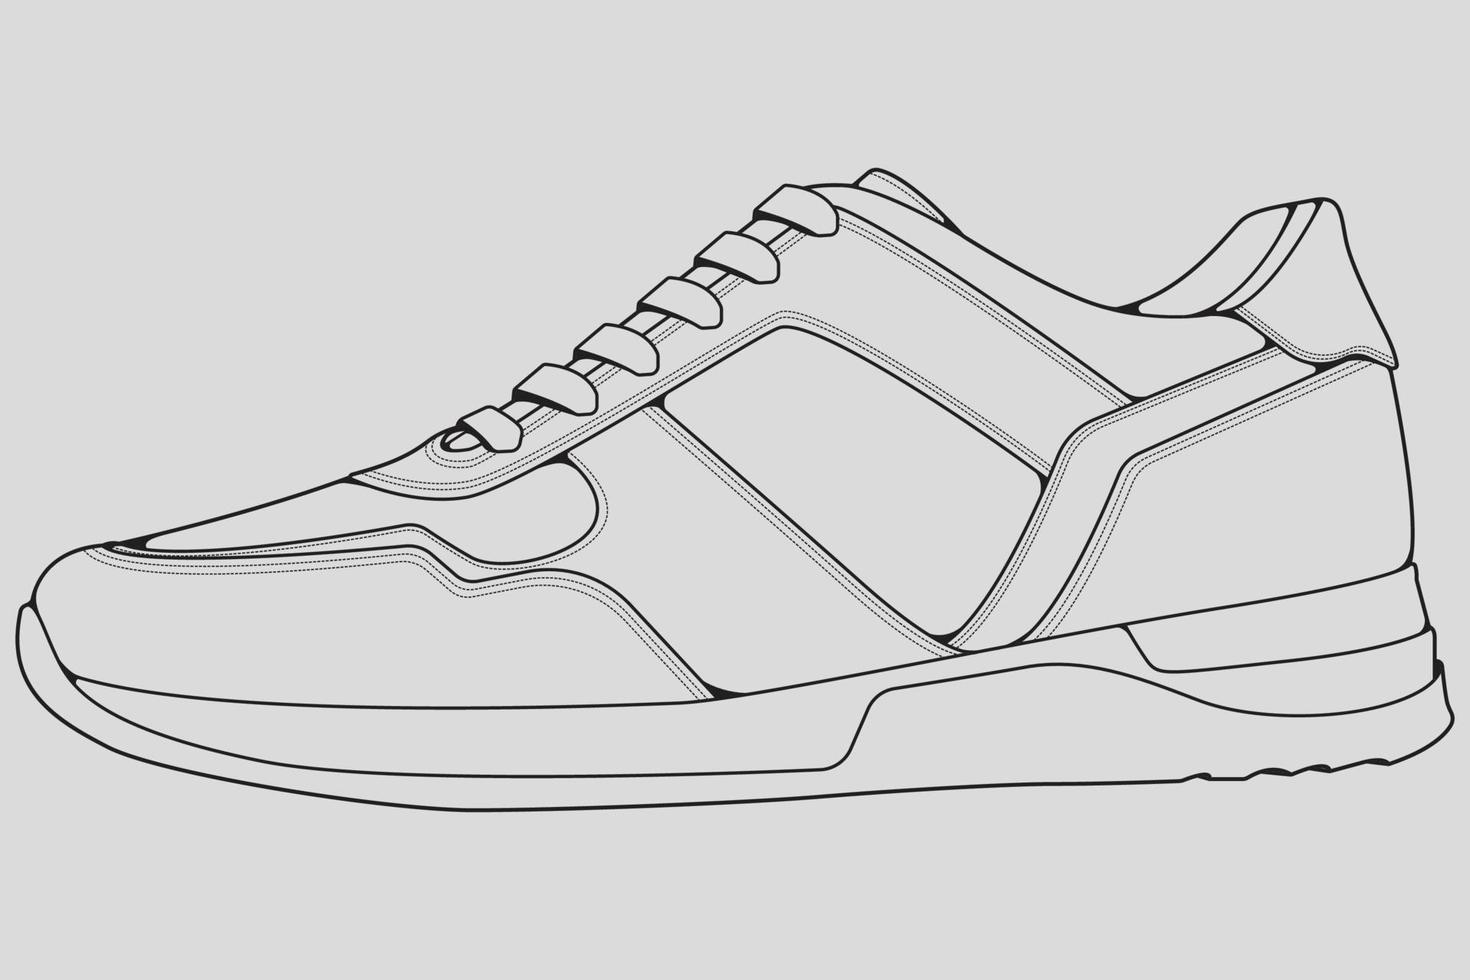 vecteur de dessin de contour de baskets de chaussures, baskets dessinées dans un style de croquis, contour de modèle de formateurs de baskets de ligne noire, illustration vectorielle.